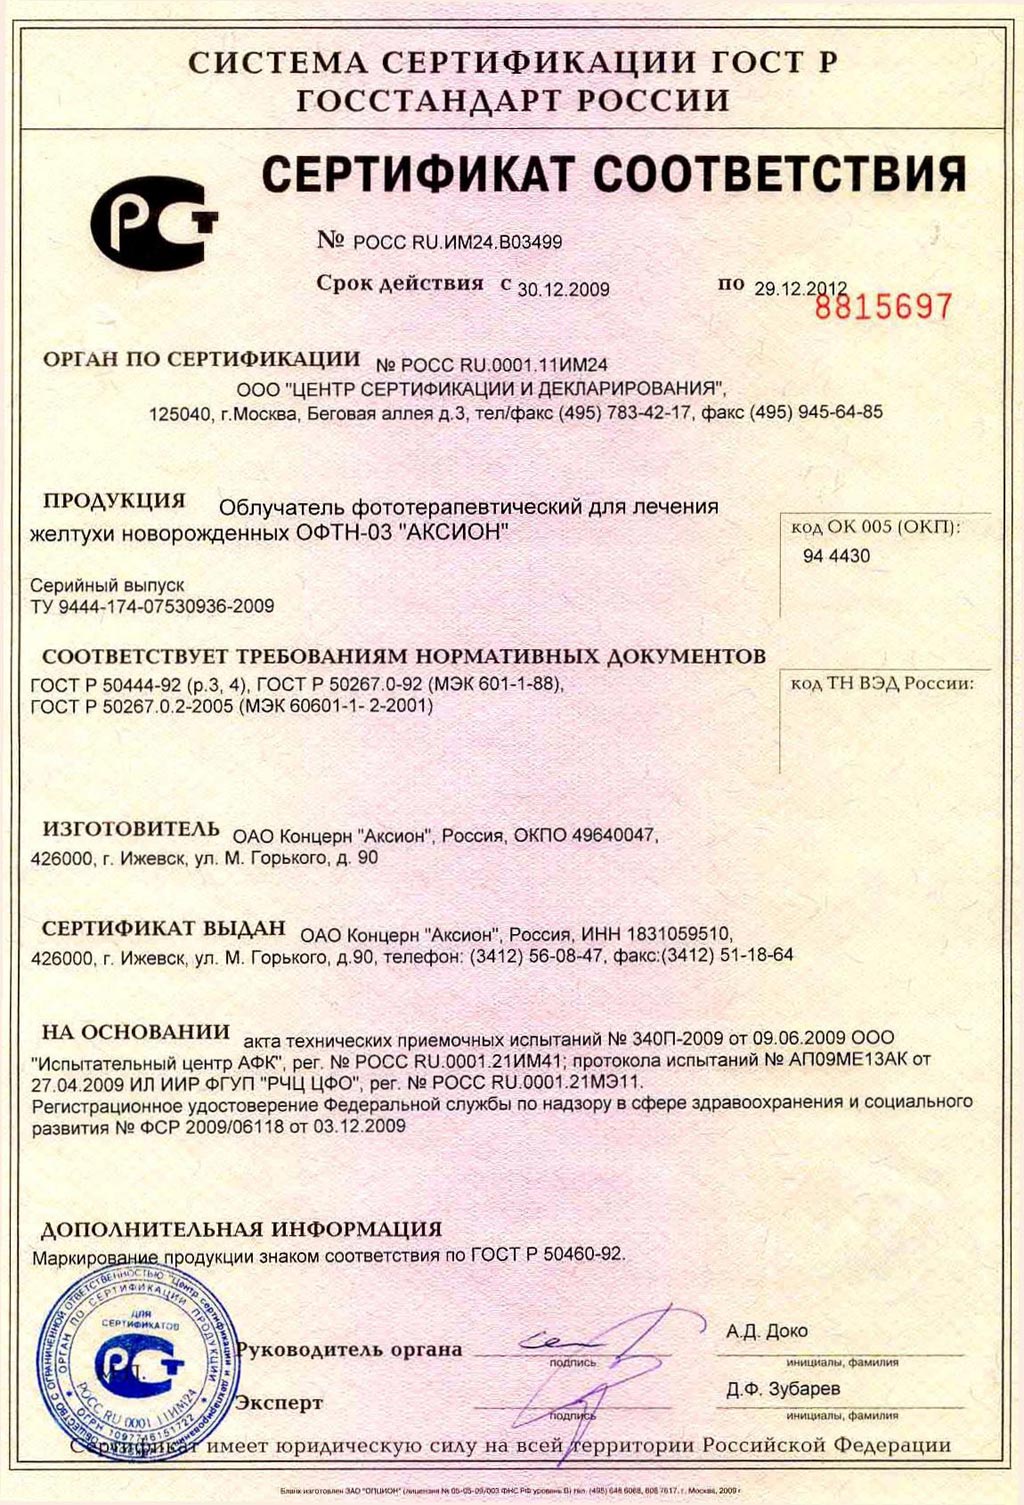 сертификат ОФТН-03 АКСИОН облучатель фототерапевтический